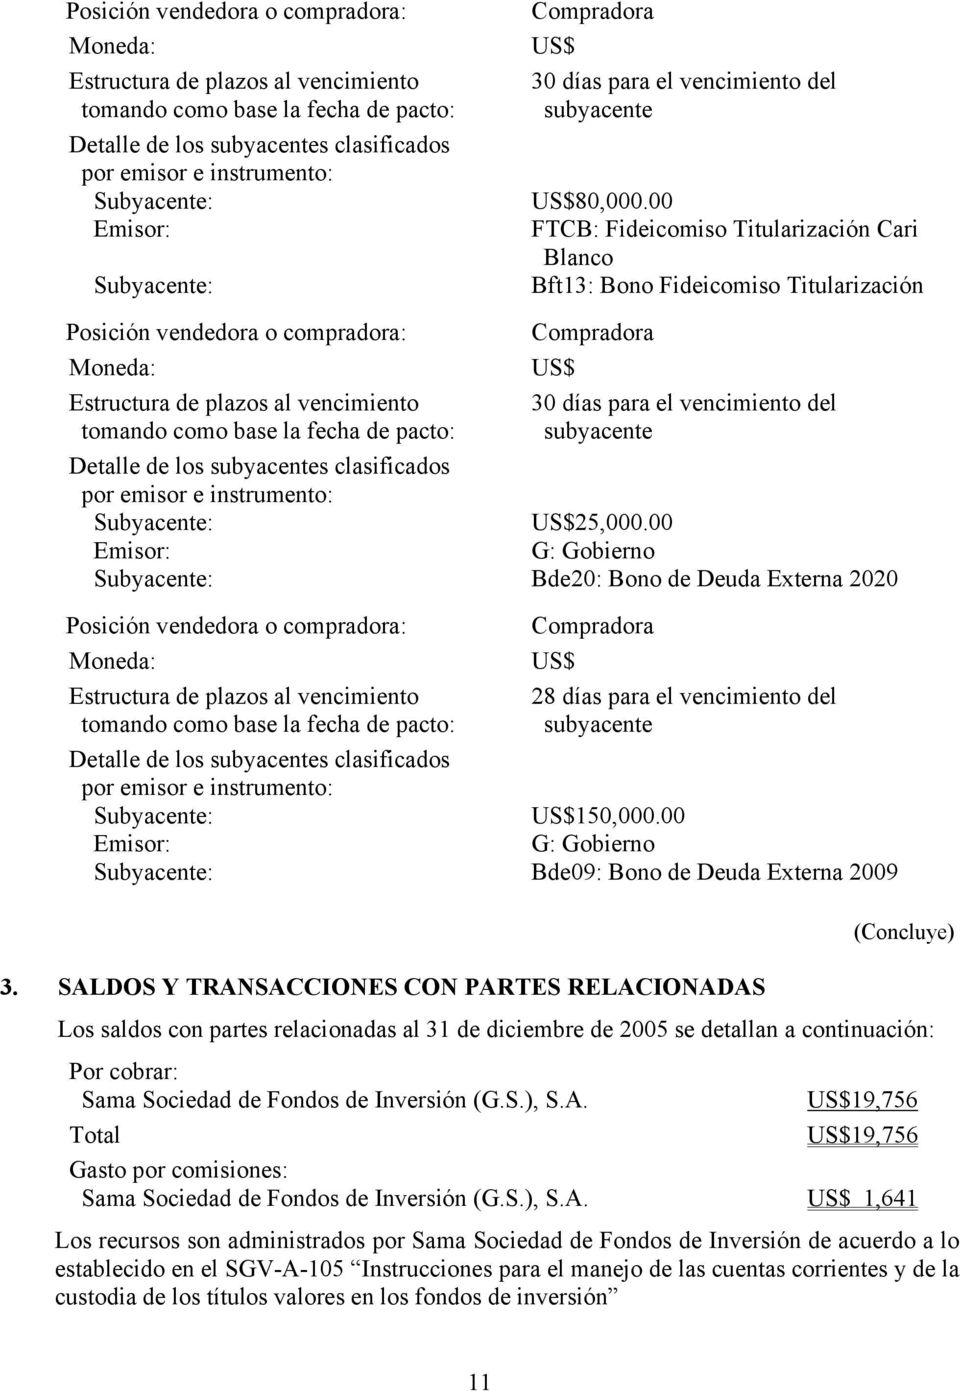 SALDOS Y TRANSACCIONES CON PARTES RELACIONADAS (Concluye) Los saldos con partes relacionadas al 31 de diciembre de 2005 se detallan a continuación: Por cobrar: Sama Sociedad de Fondos de Inversión (G.